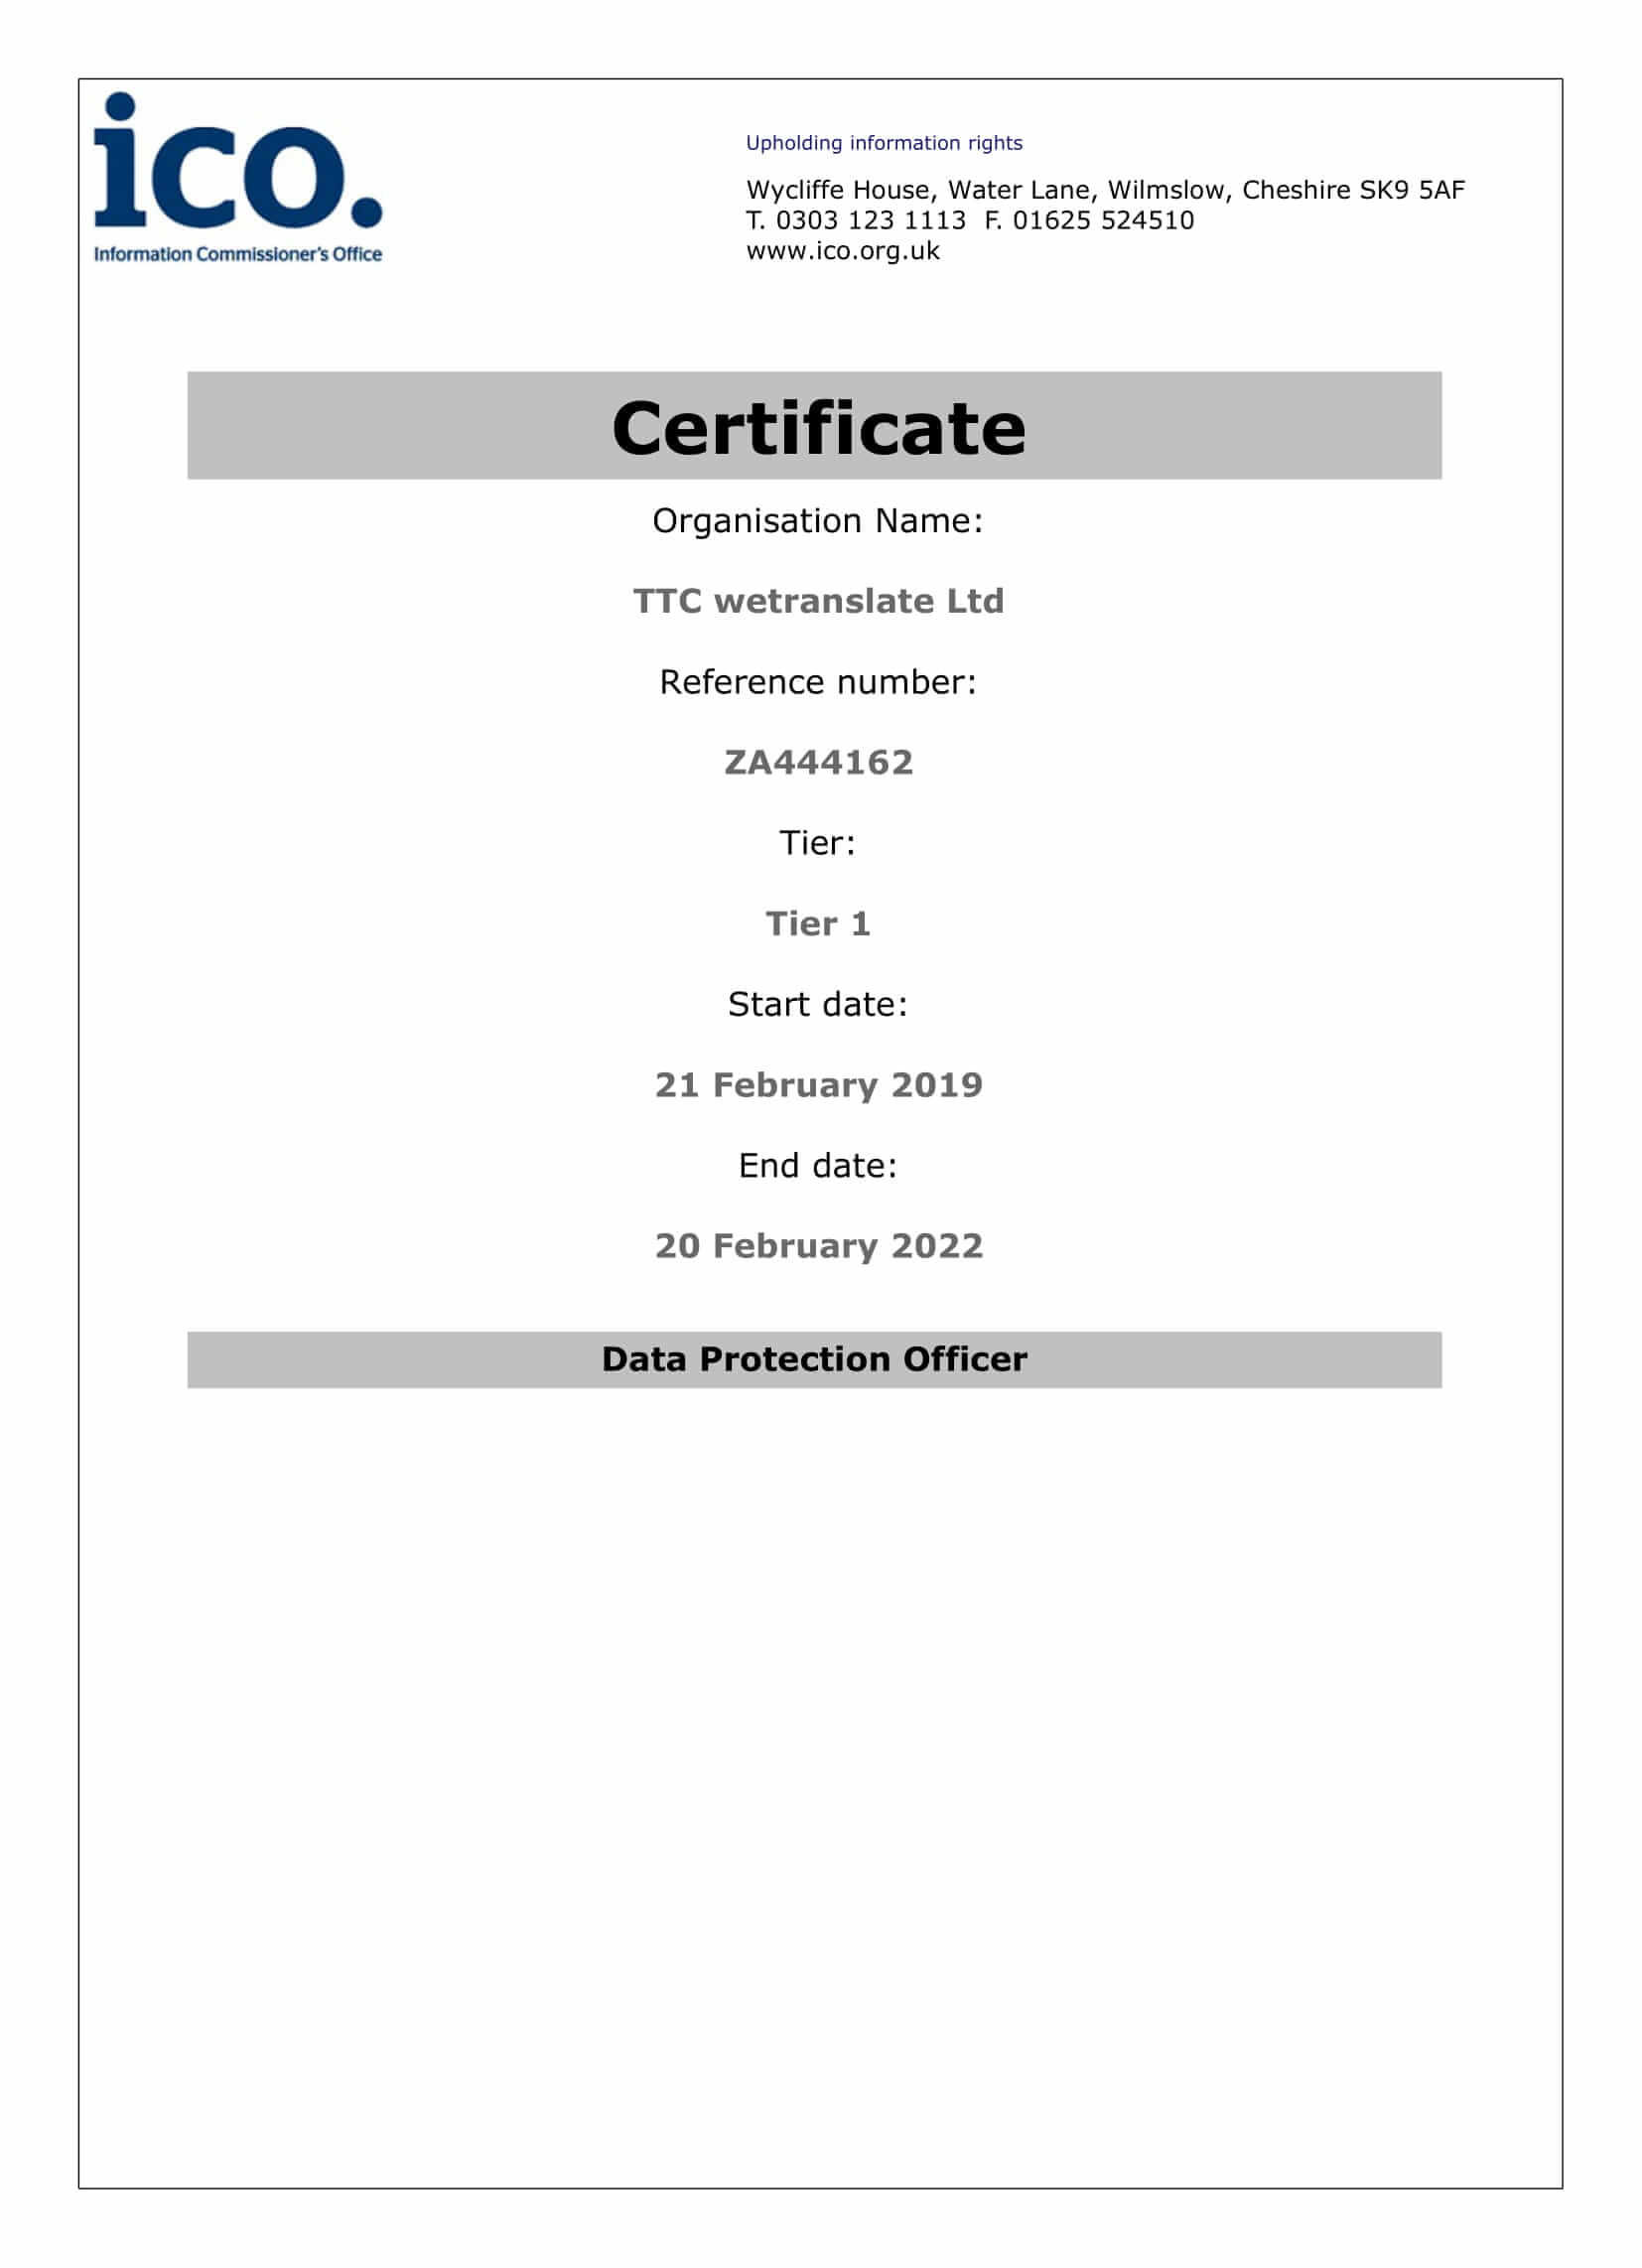 TTC wetranslate ICO Certificate